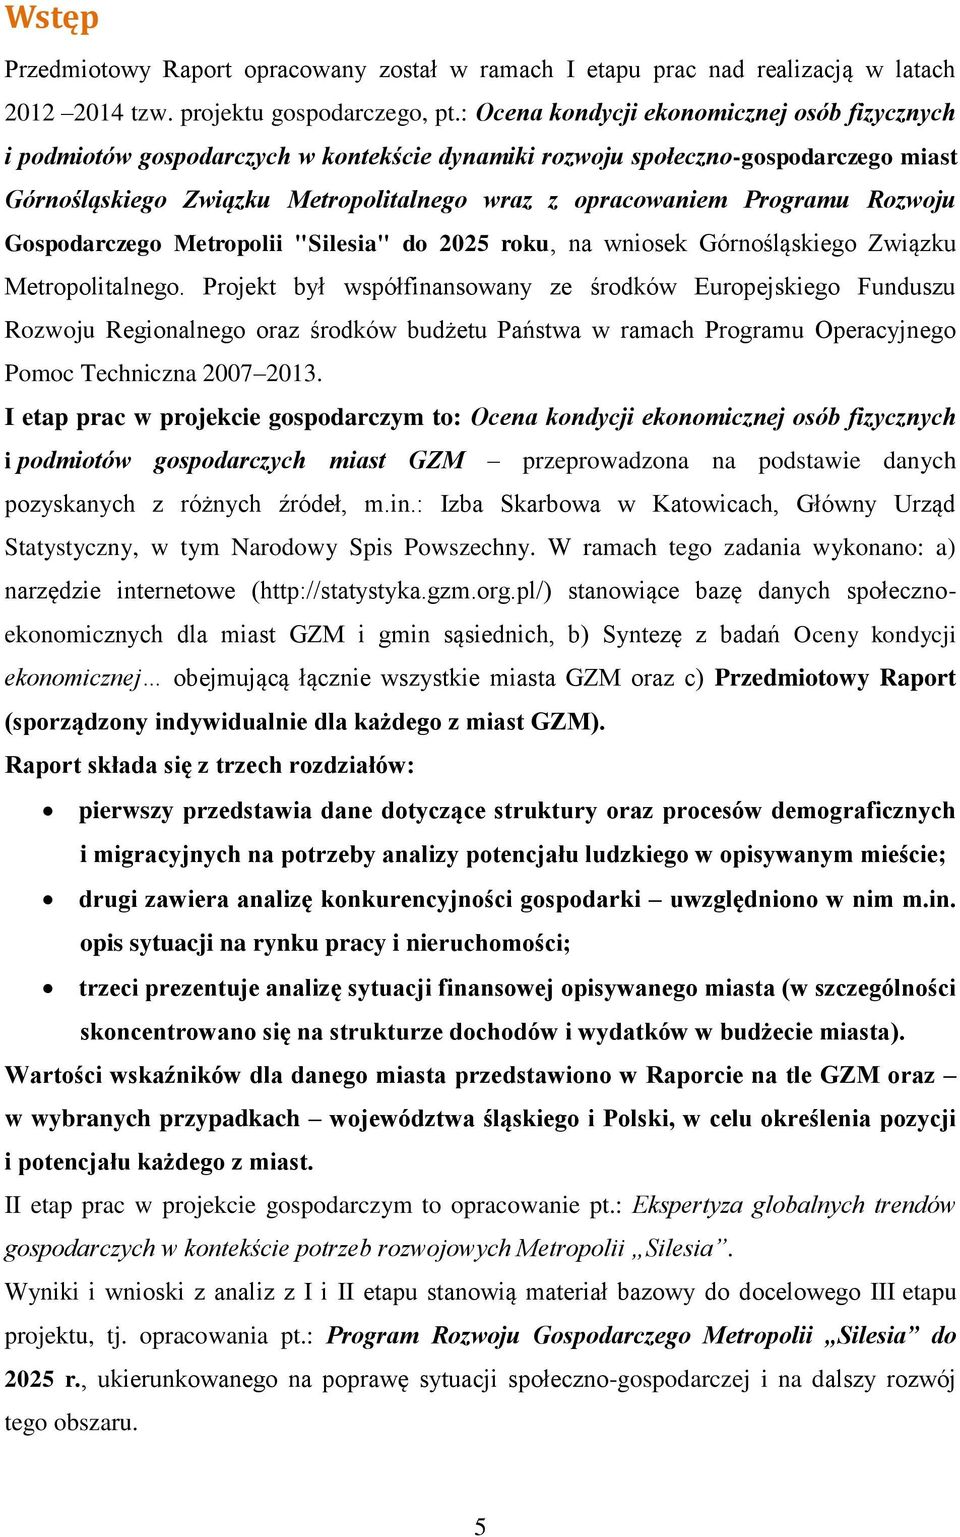 Programu Rozwoju Gospodarczego Metropolii "Silesia" do 2025 roku, na wniosek Górnośląskiego Związku Metropolitalnego.